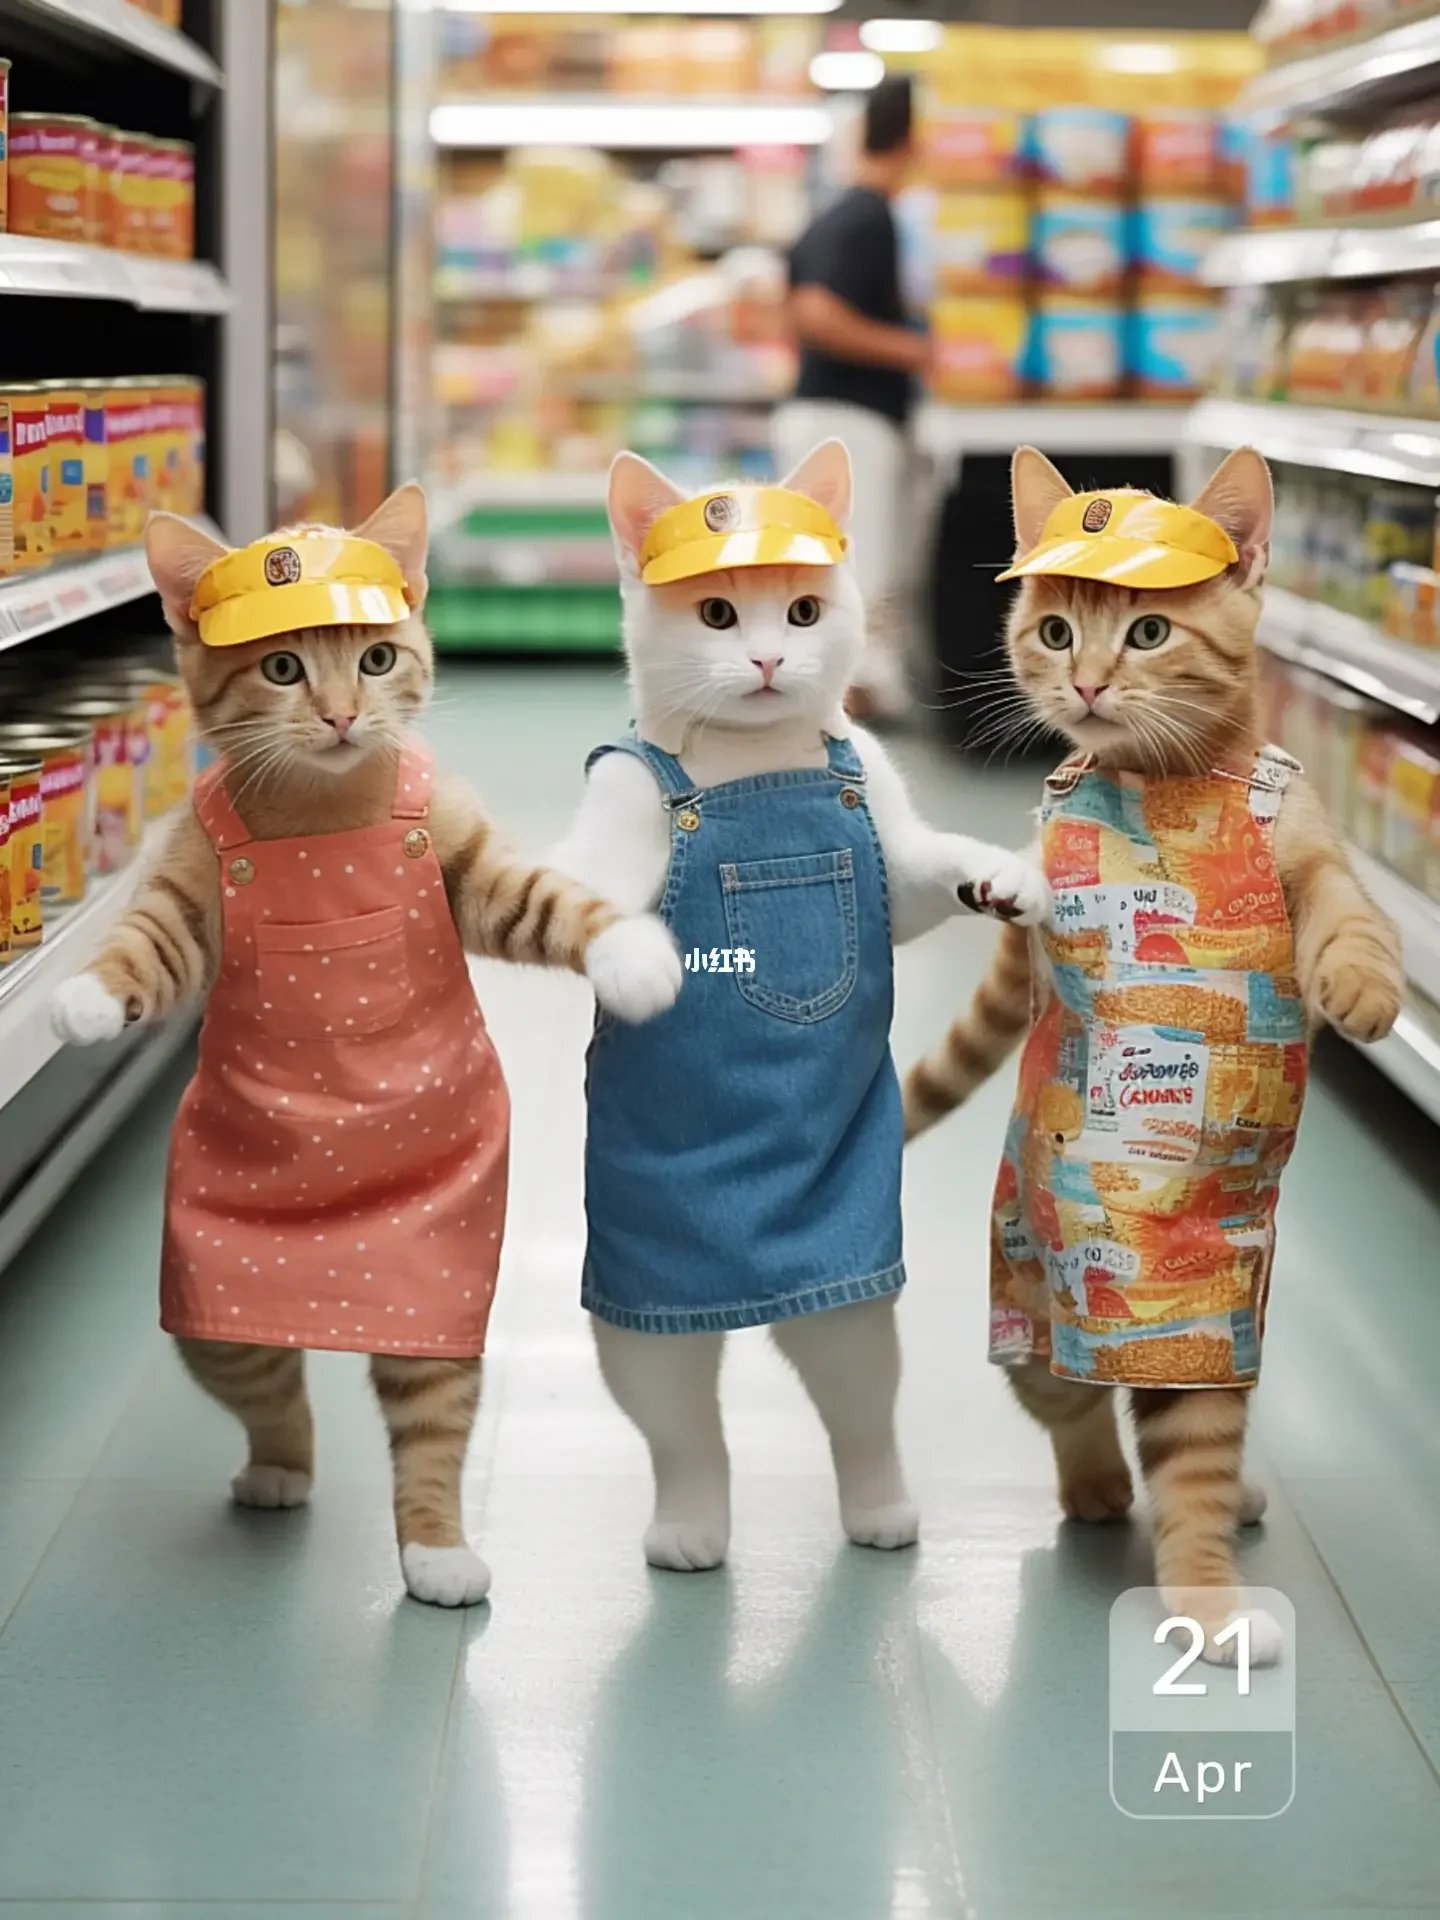 橙子的橙啦 在超市打工的猫咪们都使出了看家本领